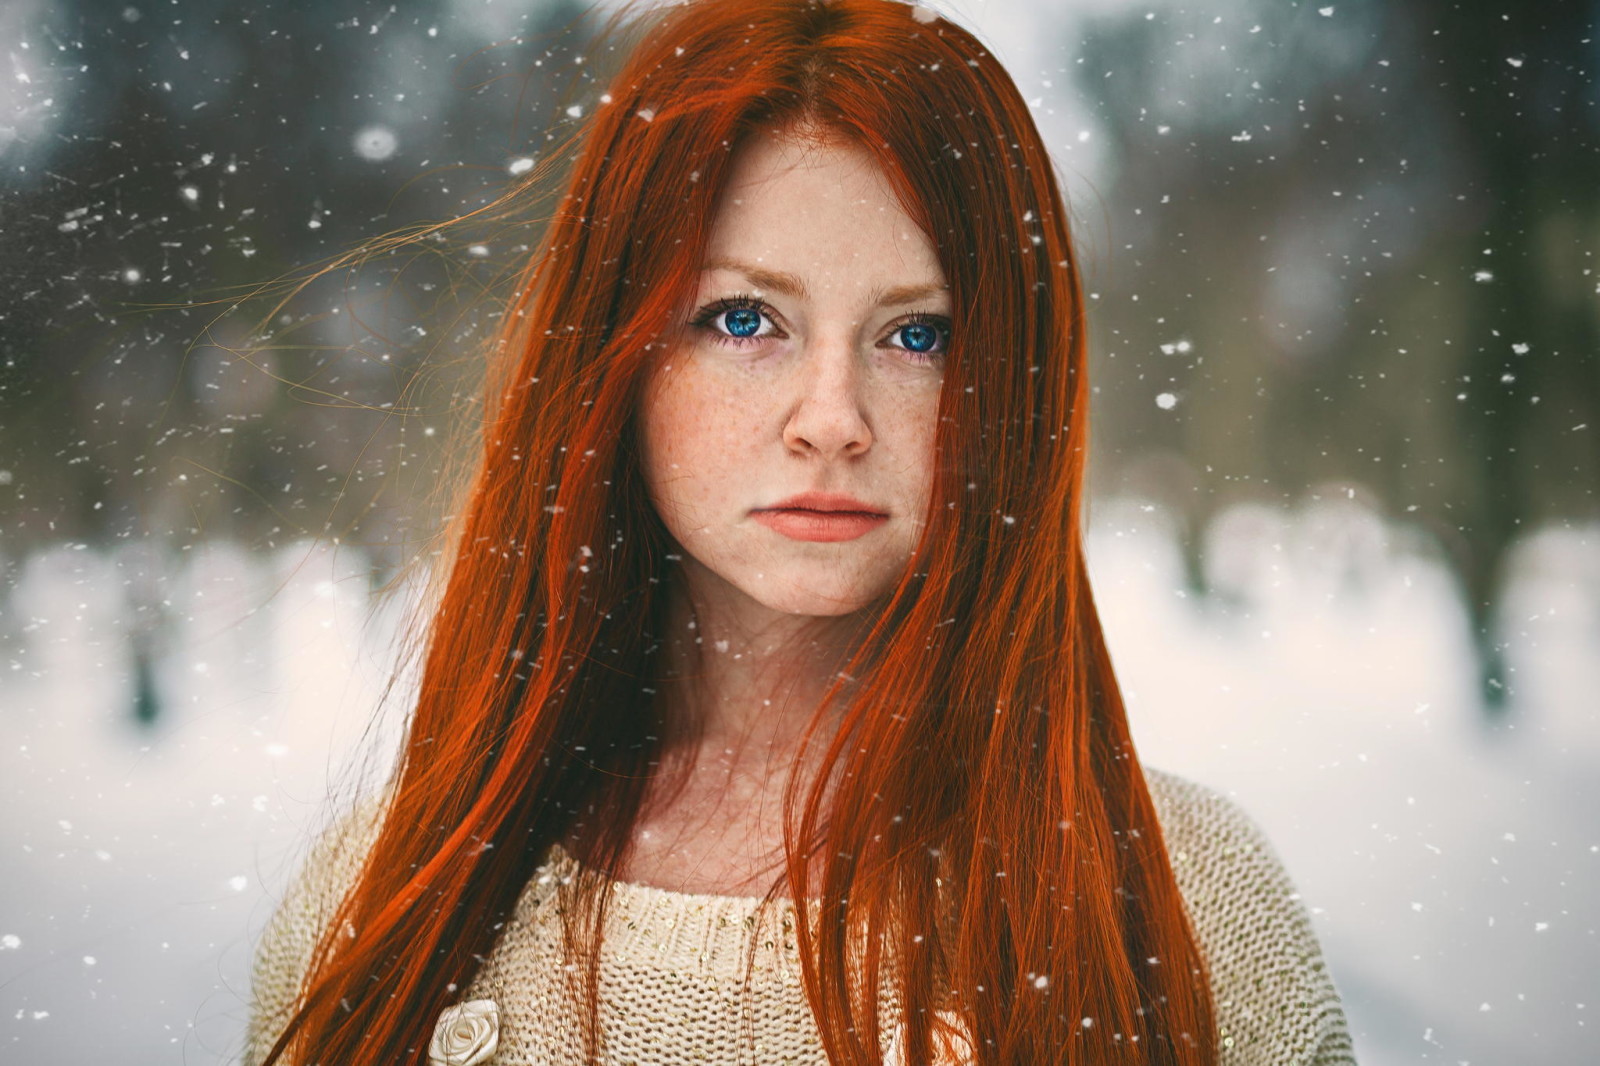 salju, potret, berambut merah, gadis merah